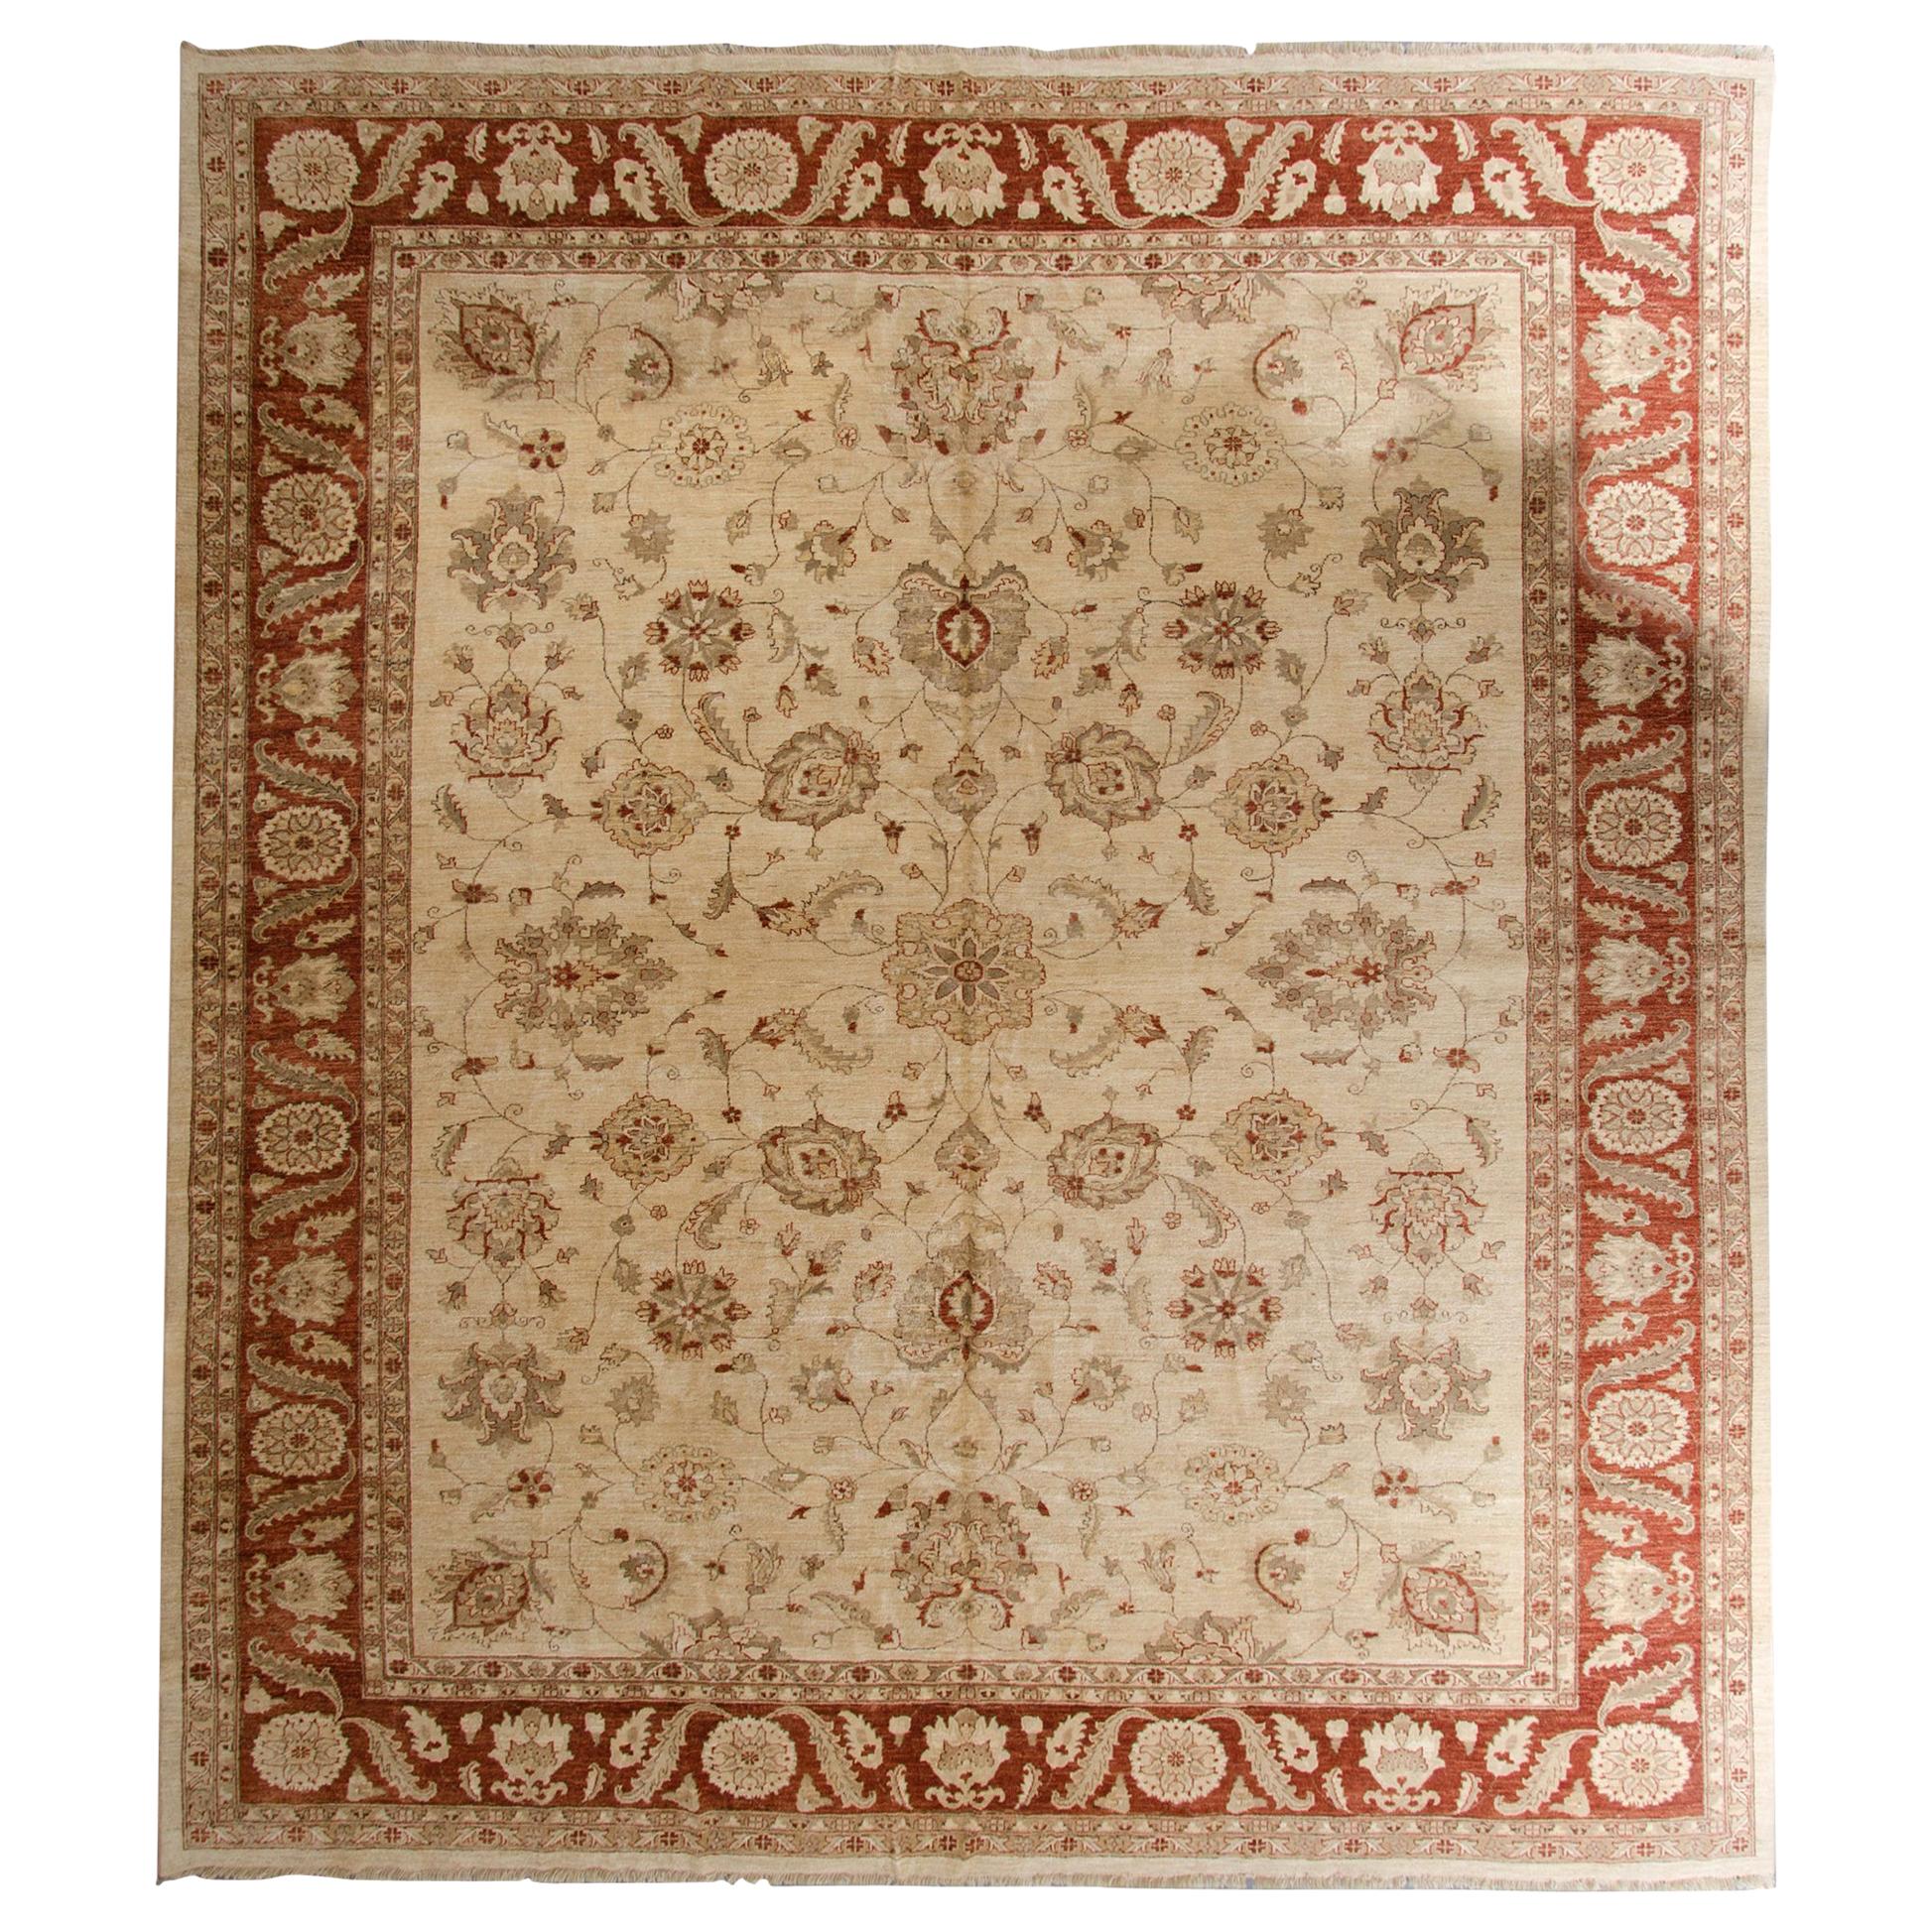 Großer Teppich aus roter und cremefarbener Wolle im traditionellen Ziegler-Stil